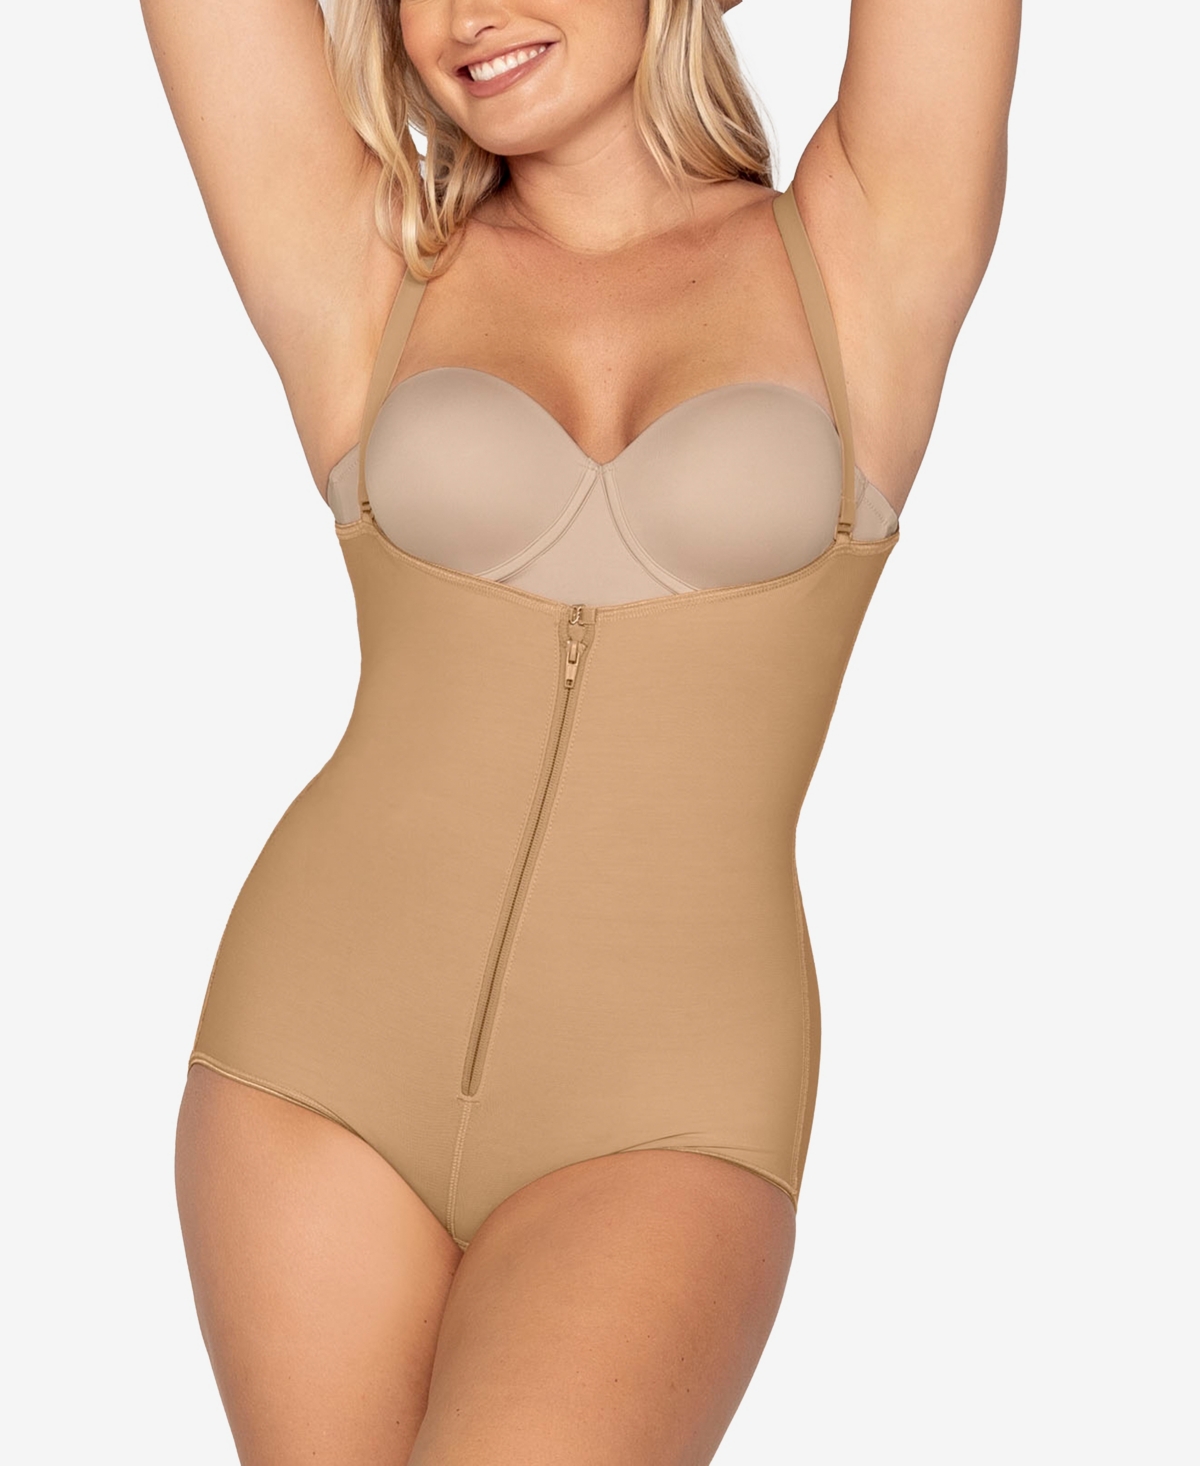 Women's Firm Tummy-Control Wyob Power Slim Faja Bodysuit Shaper 018478 - Beige- Nude